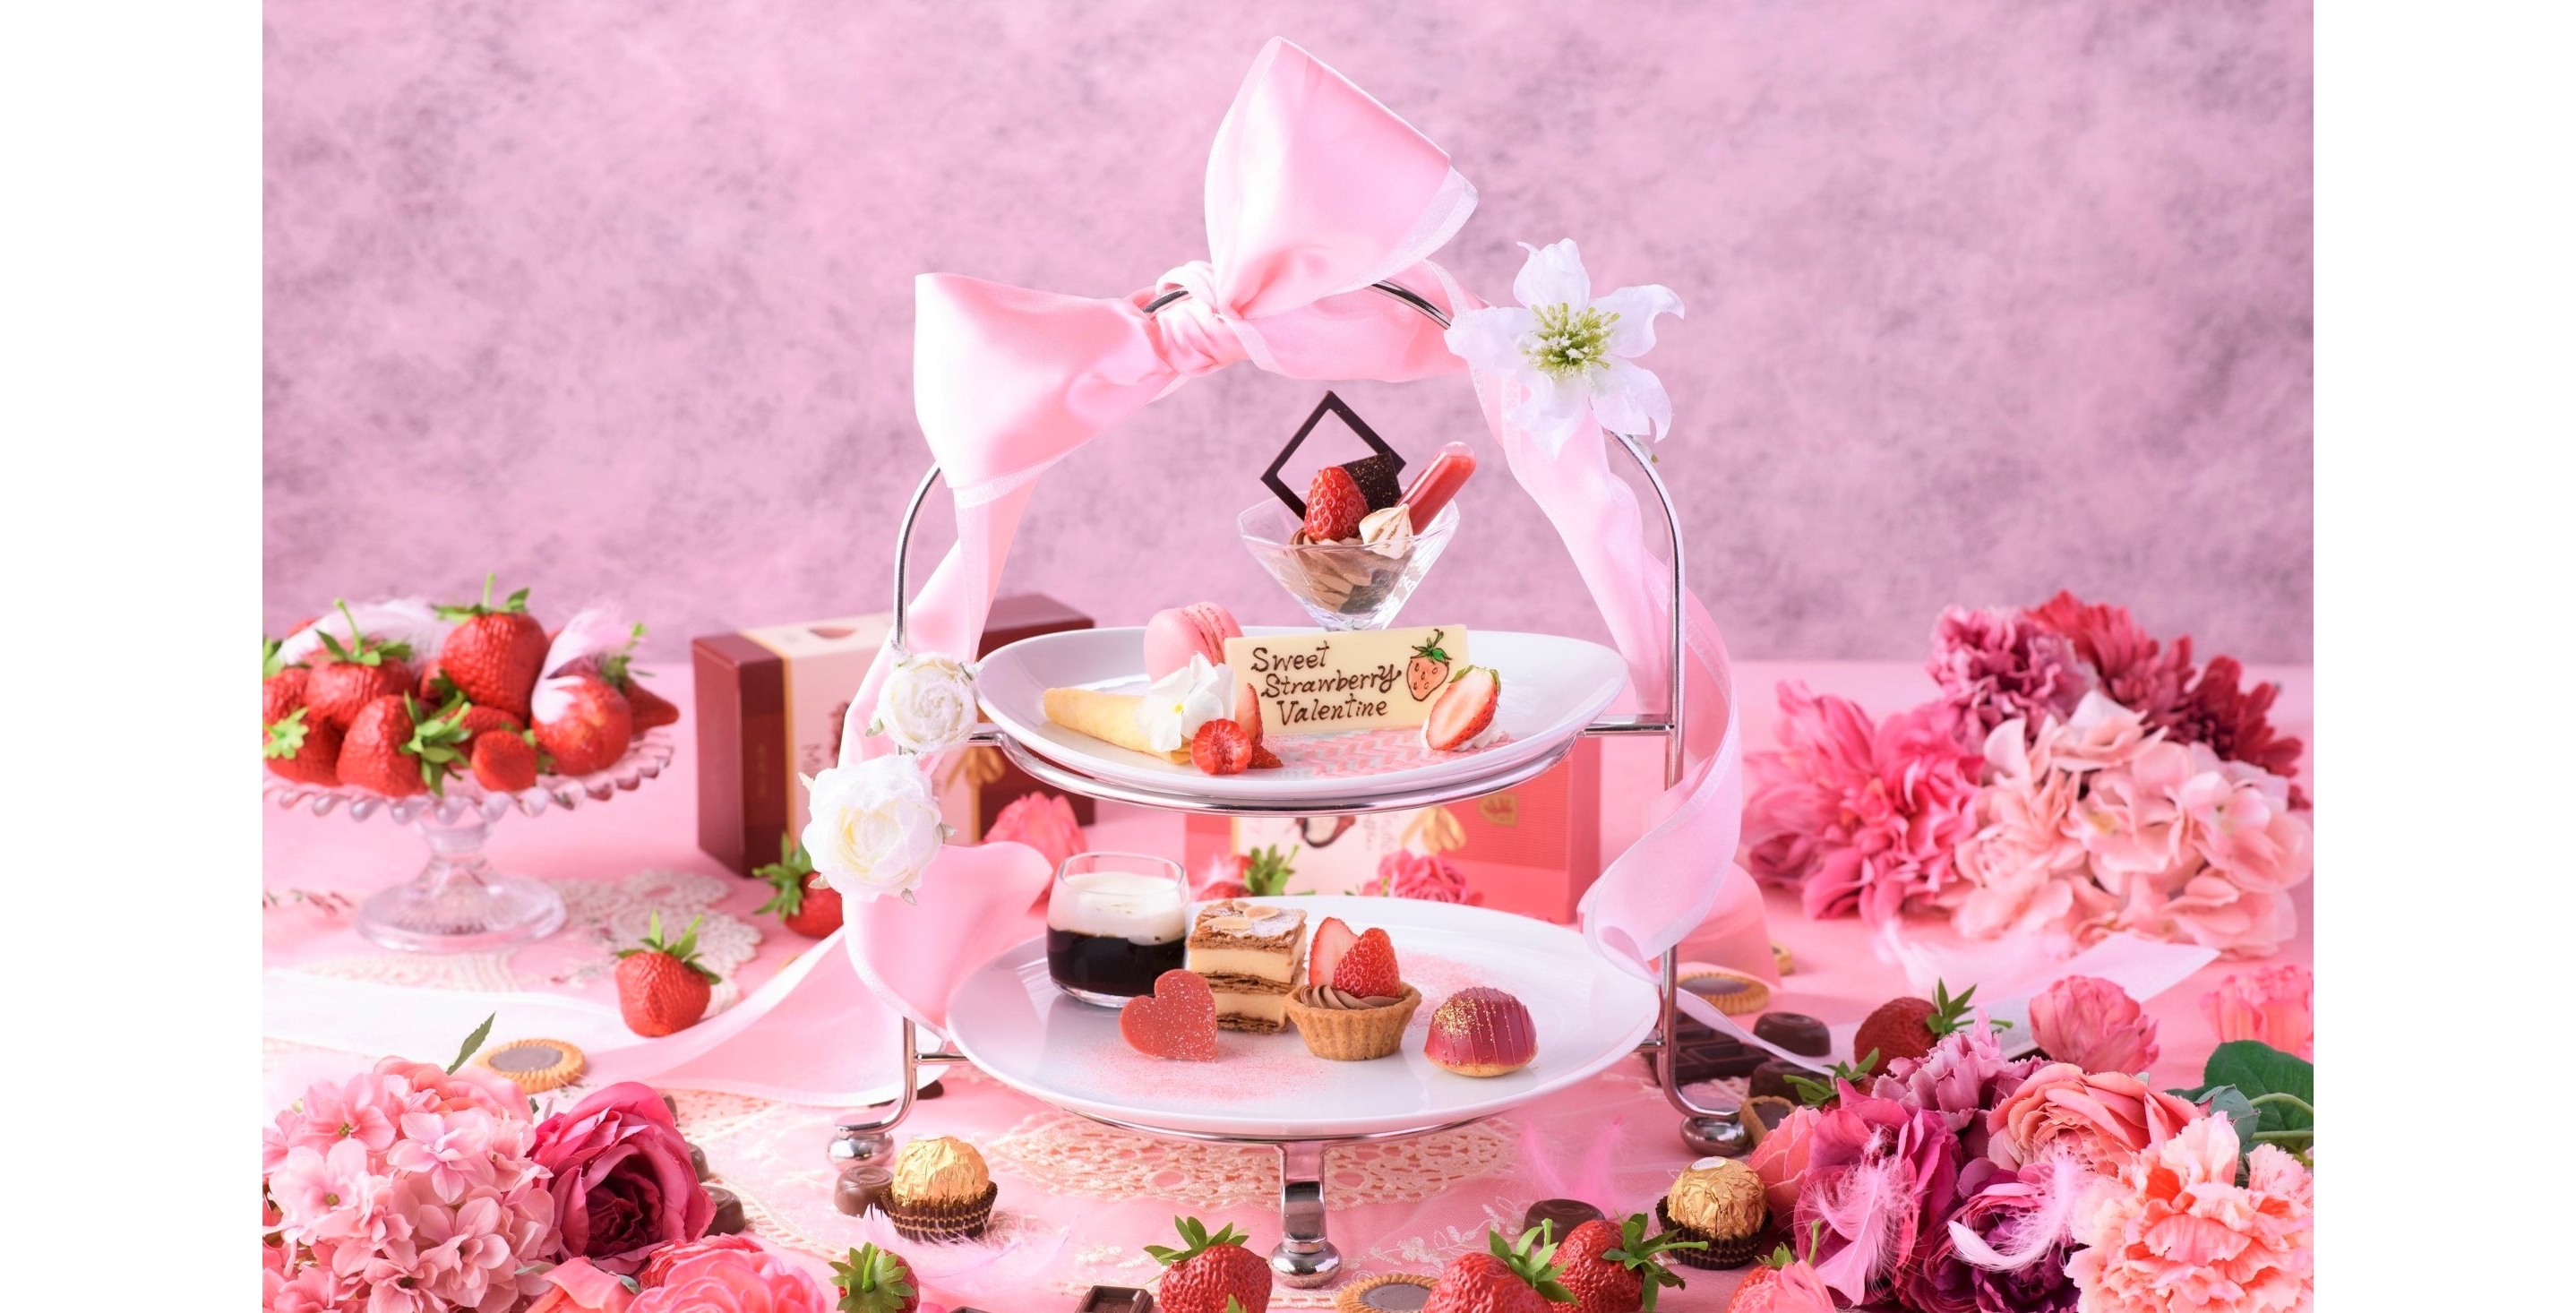 苺とチョコのスイーツフェア「Sweet Strawberry Valentine」がアニヴェルセルカフェ みなとみらい横浜にて期間限定開催中1